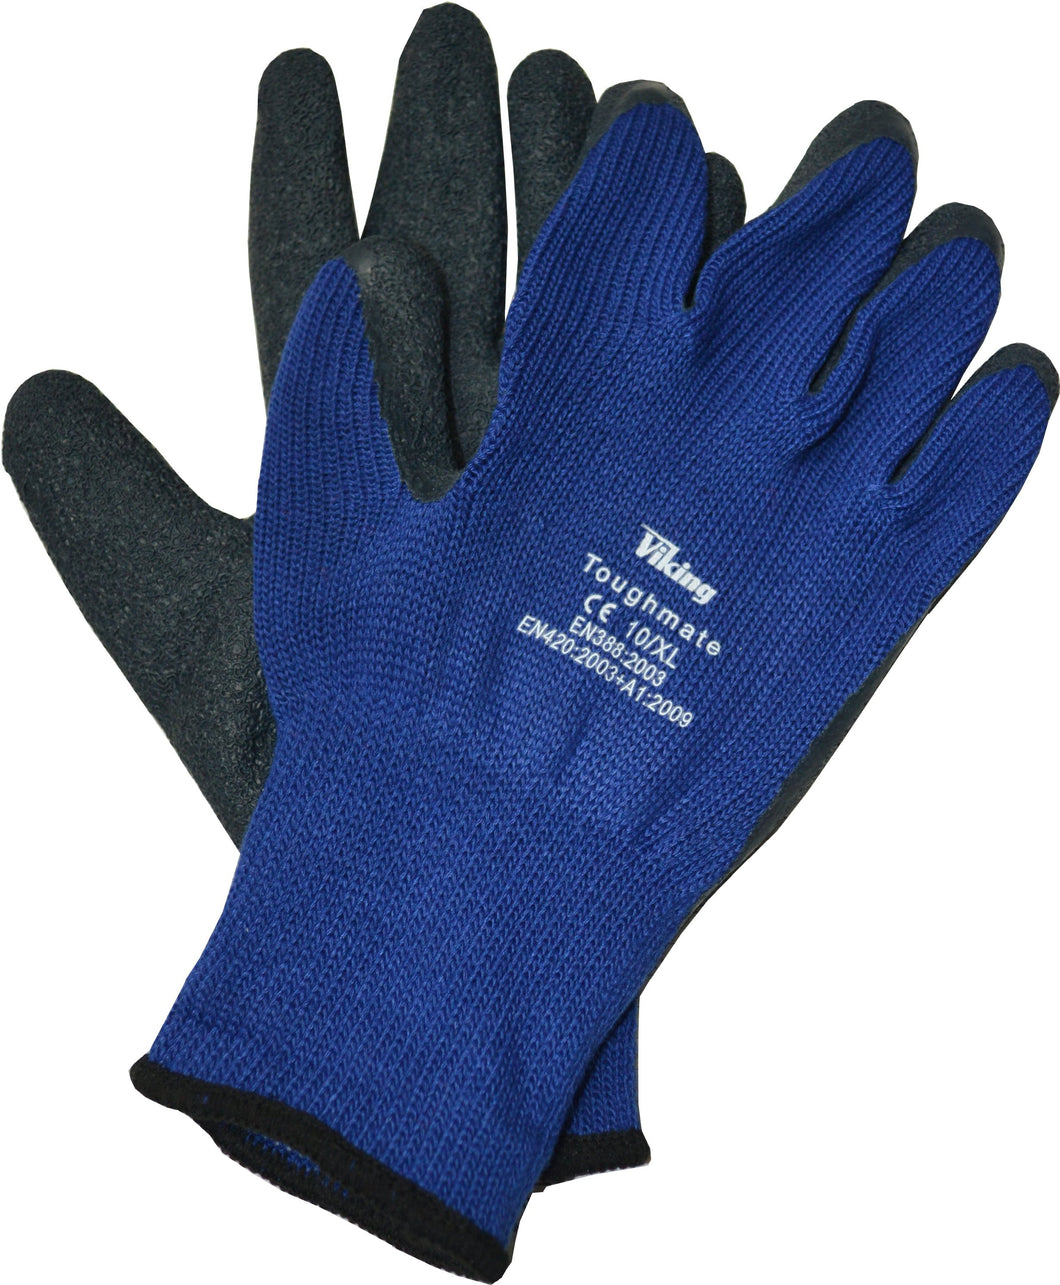 Tough Mate Gloves - 12 Pair Pack XX-Large Viking